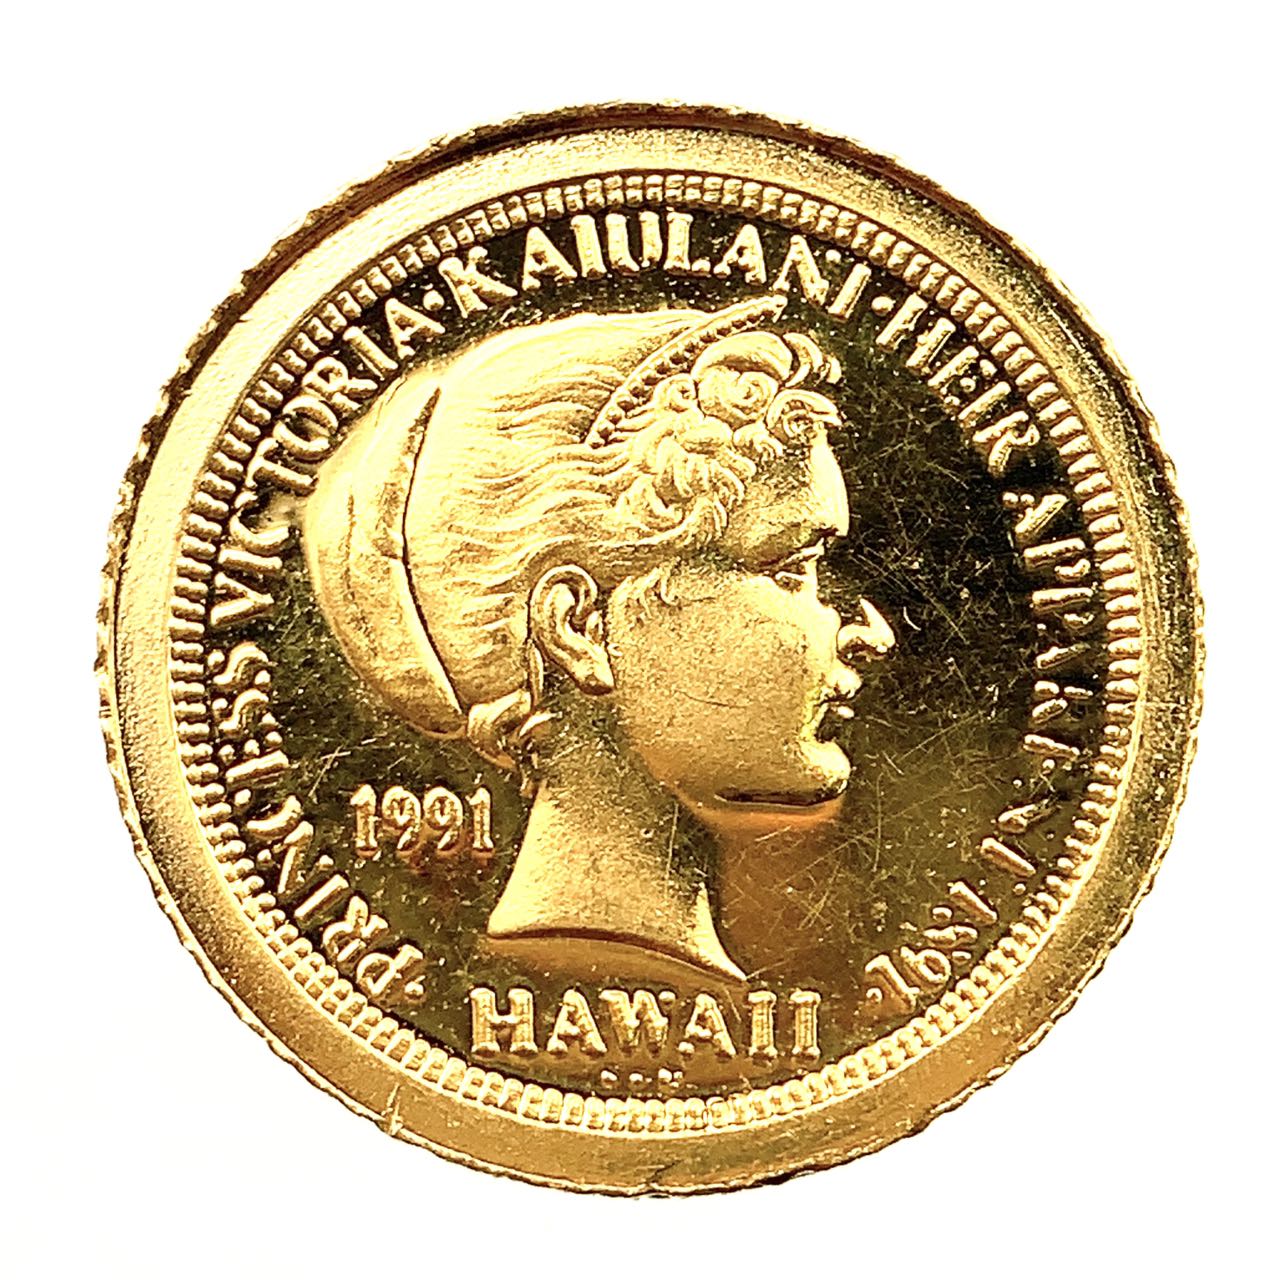 ビクトリア カイウラニ王女 イルカ金貨 ハワイ イエローゴールド 1991年 1.5g 1/20オンス 純金コイン 24金 コレクション Gold